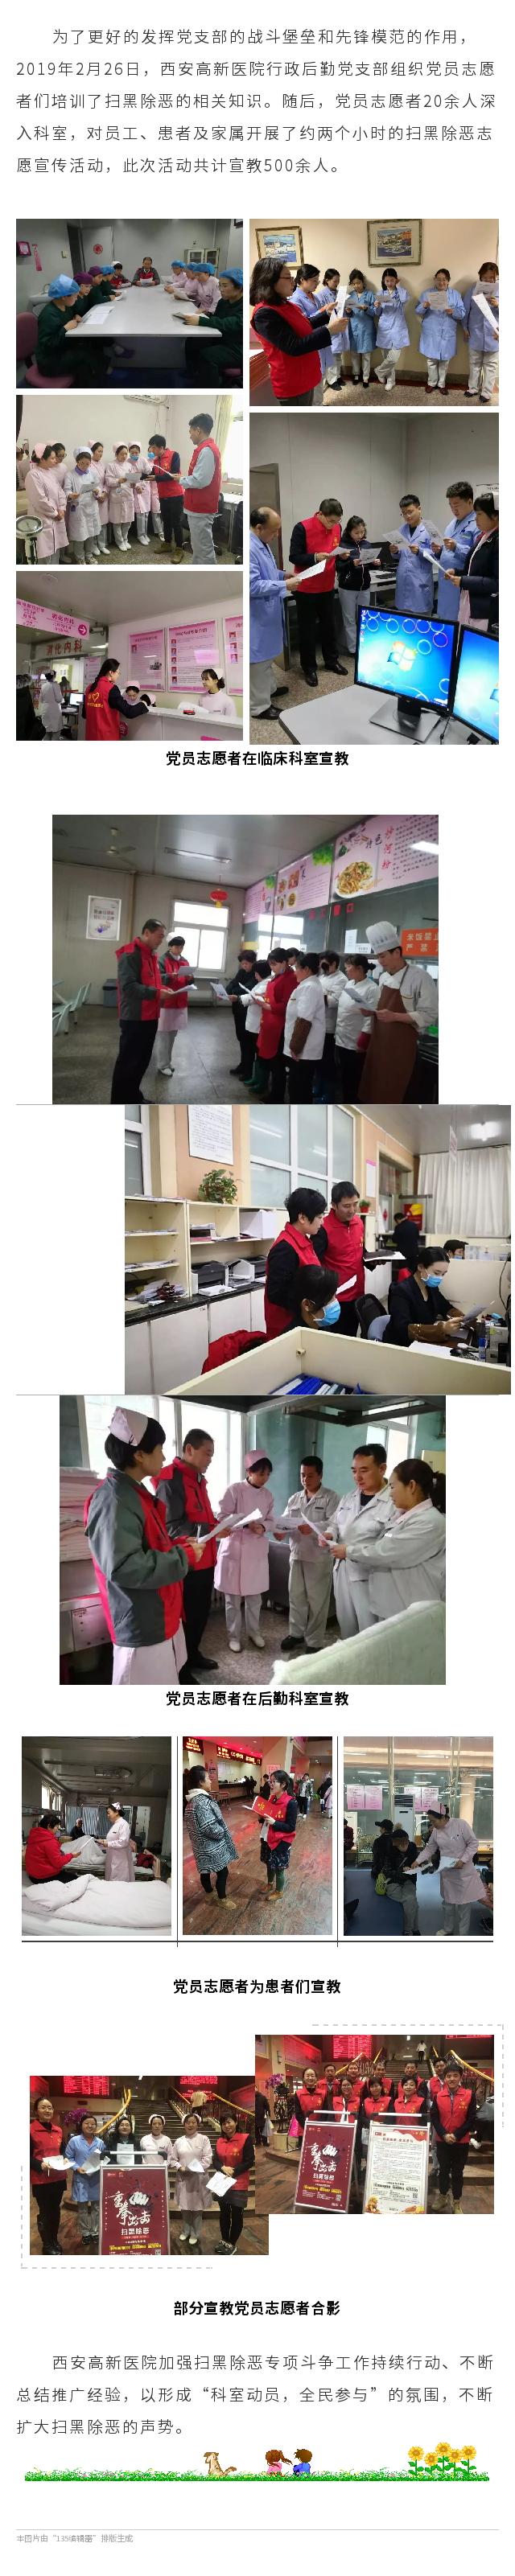 西安高新医院行政后勤支部党员扫黑除恶志愿者在行动.png